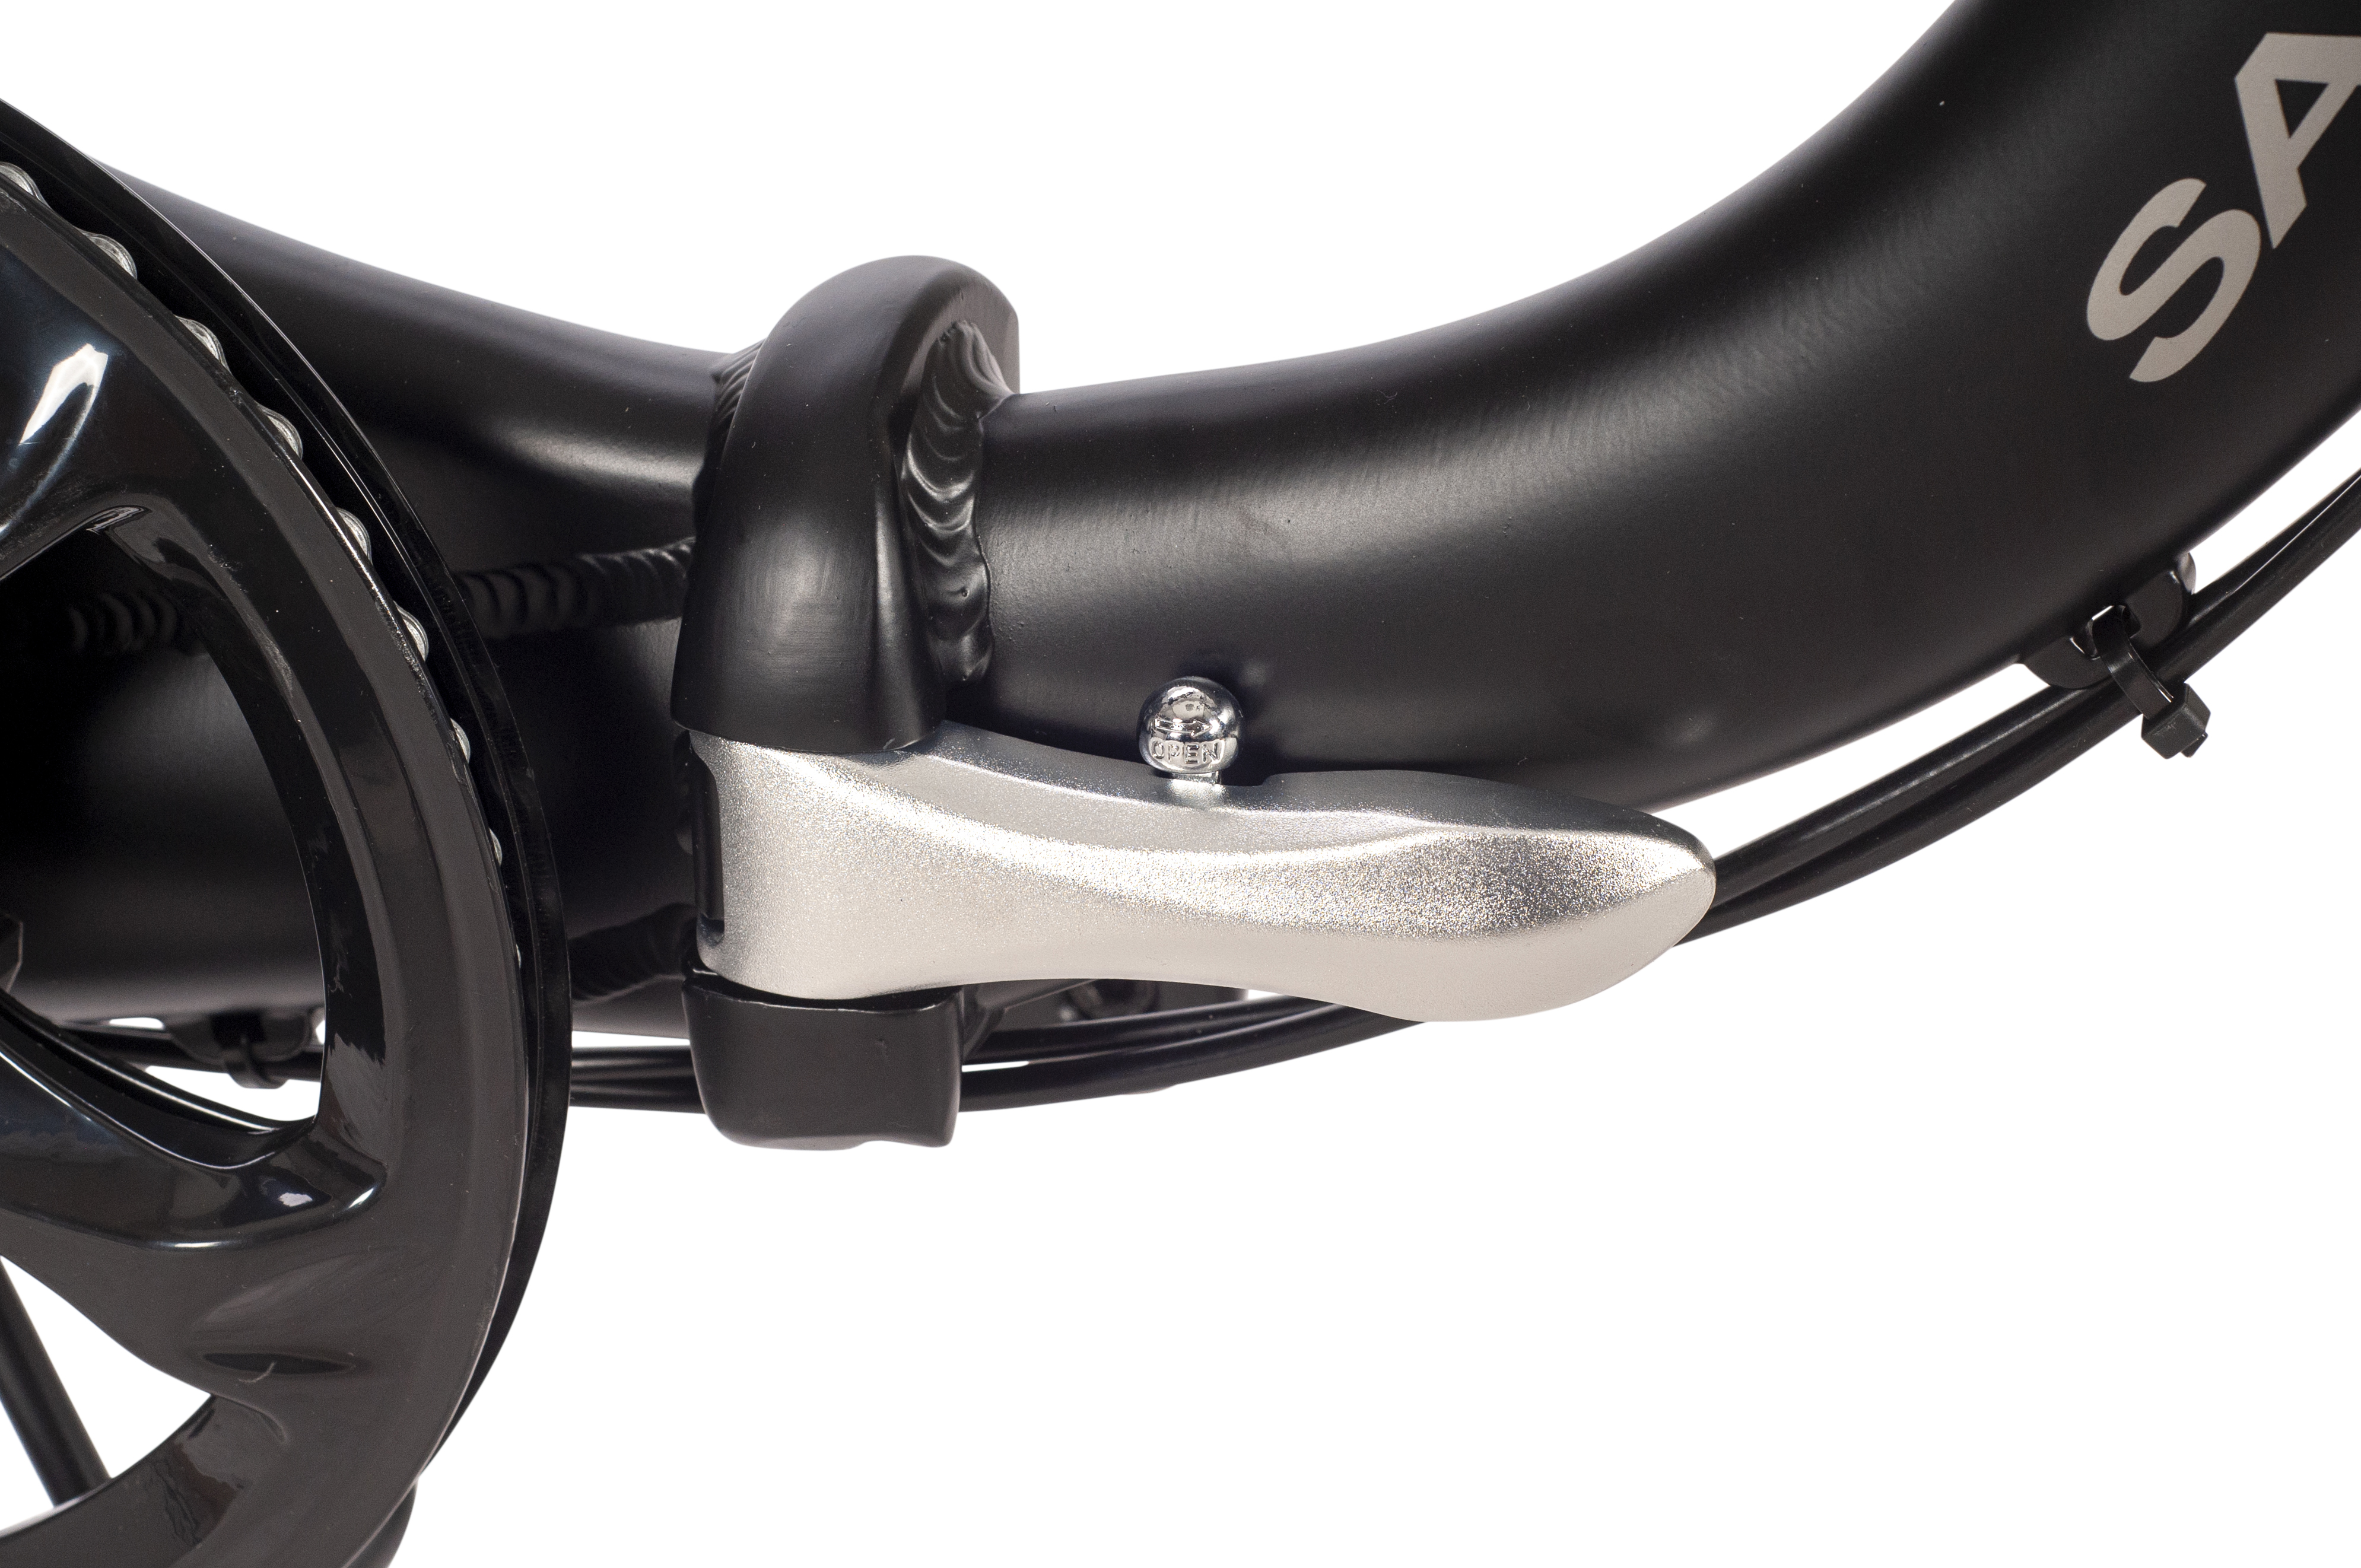 SAXX Foldi Plus 2.0 3 Gang Nabenschaltung 2. Wahl gebraucht Rücktrittbremse Vorderradmotor schwarz matt 